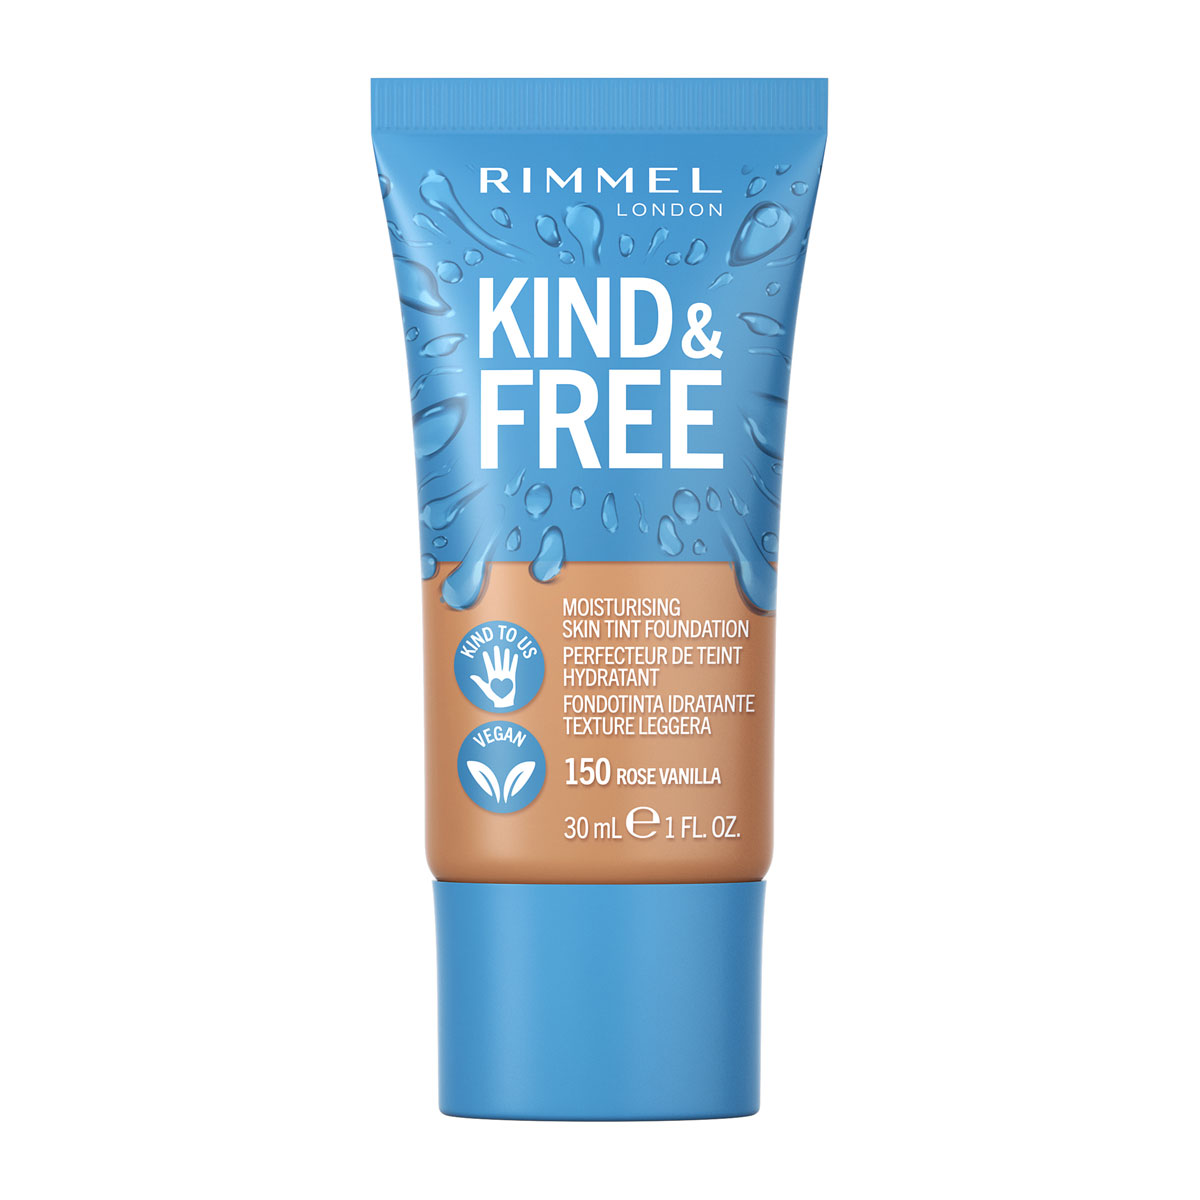 RIMMEL | Kind & Free Moisturising Skin Tint Foundation - 160 Vanilla